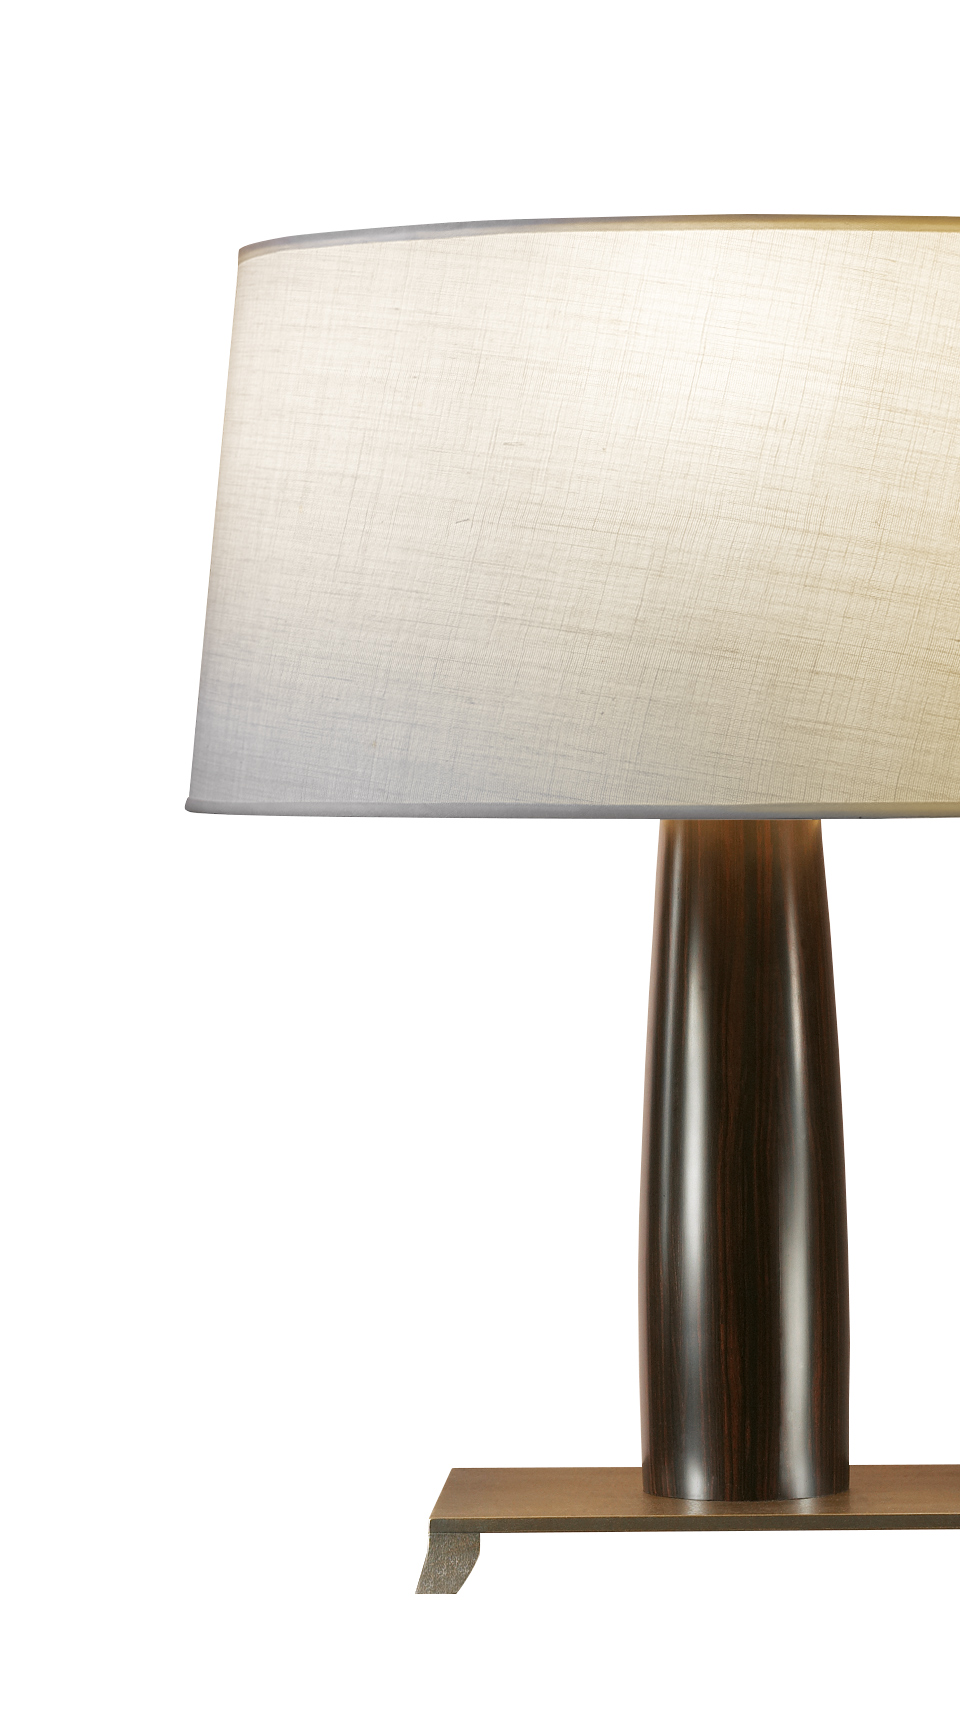 Pia&amp;nbsp;— настольная светодиодная лампа с деревянным каркасом или обитая кожей, с бронзовым основанием и сшитым вручную абажуром из каталога Promemoria | Promemoria